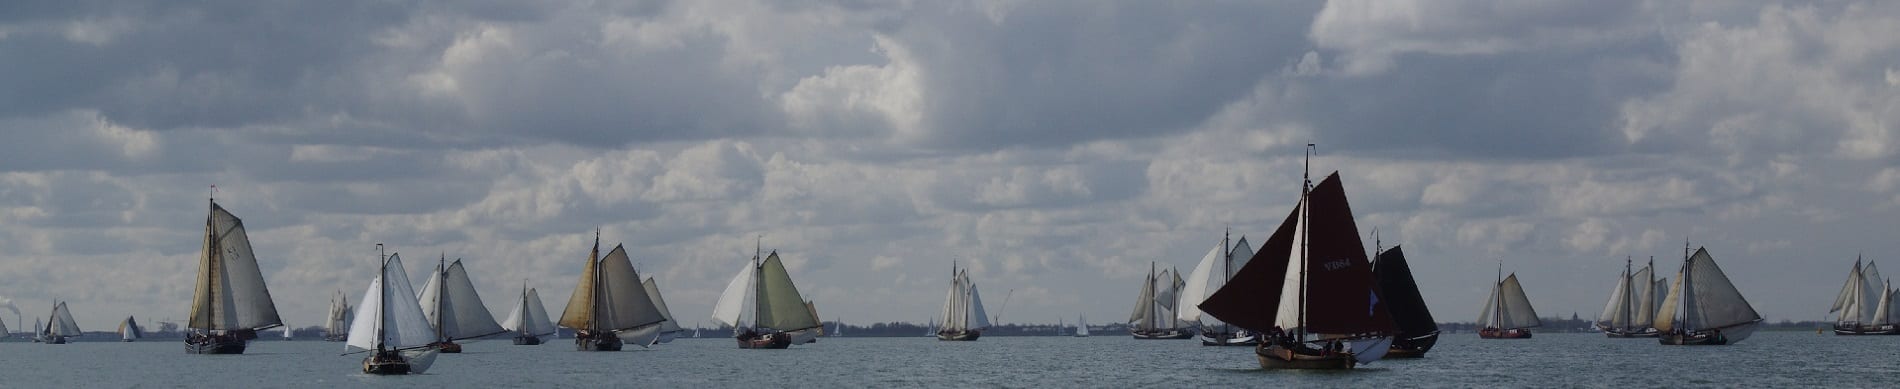 Segeln IJsselmeer